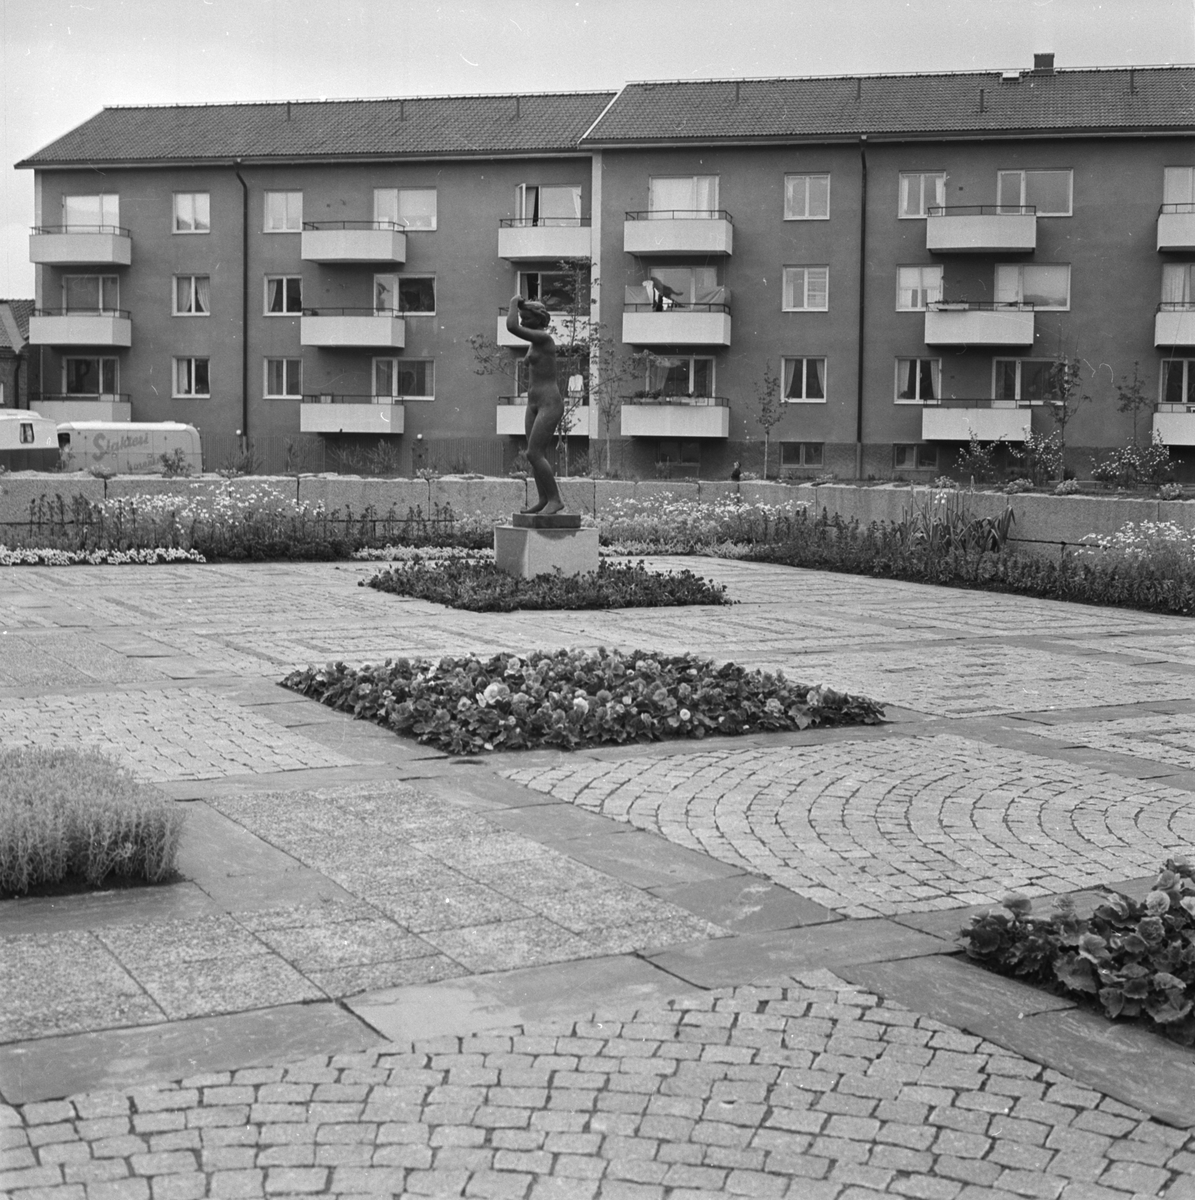 "Flora nu i rätt miljö", Byggmästarplan, Sala backe, Uppsala 1957